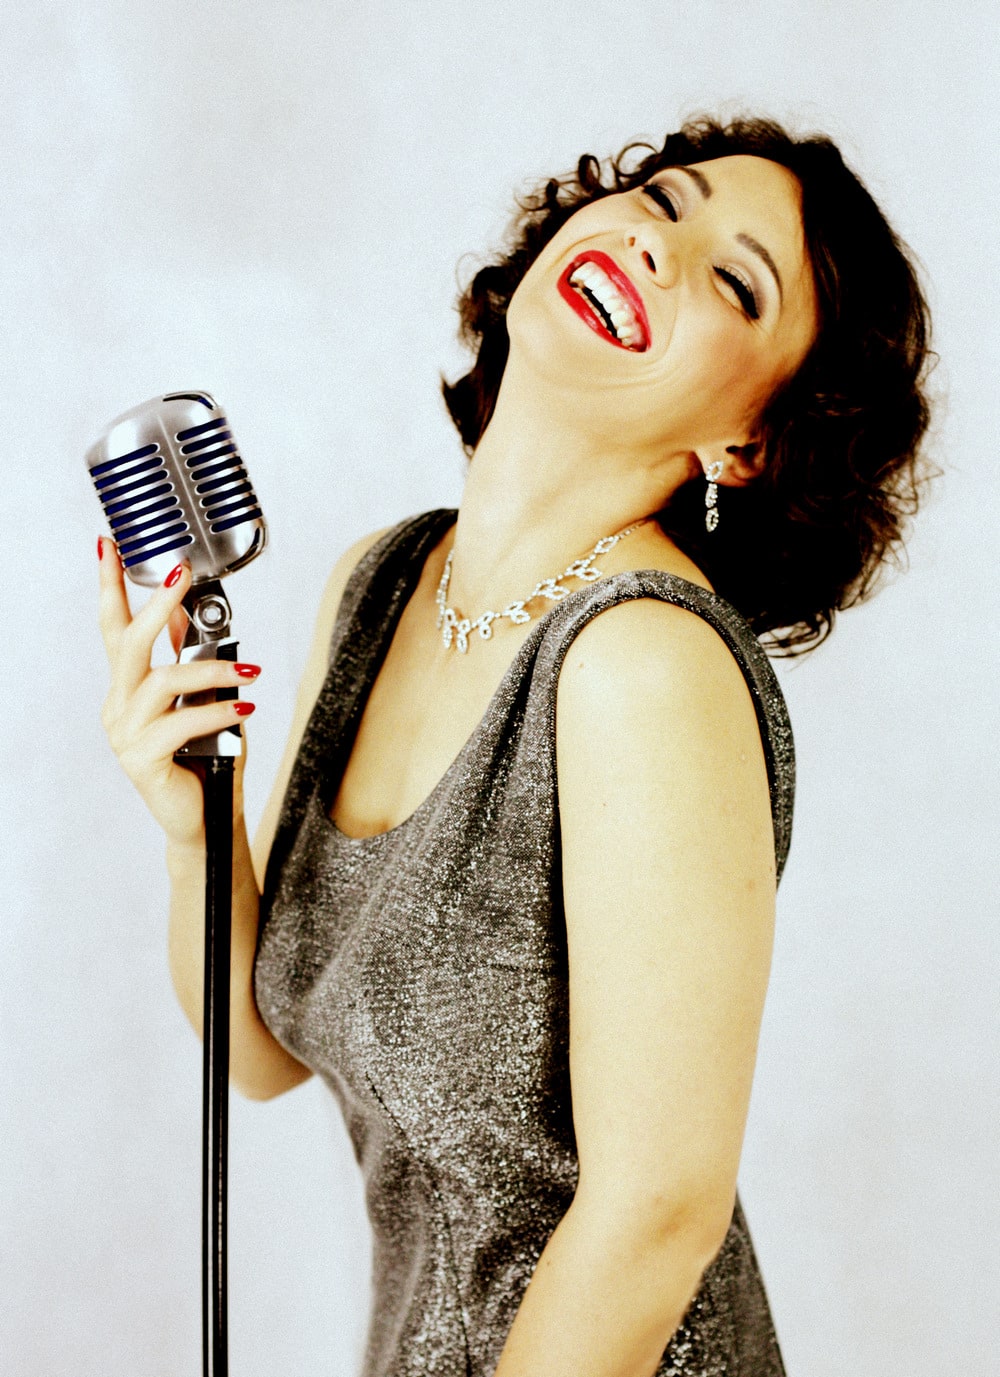 zdjęcie z półprofilu – uśmiechnięta, ciemnowłosa kobieta z odchyloną do tyłu głową, w sukni wieczorowej koloru brązowego, stojąca przy srebrnym mikrofonie na statywie, prawą dłonią dotyka mikrofonu